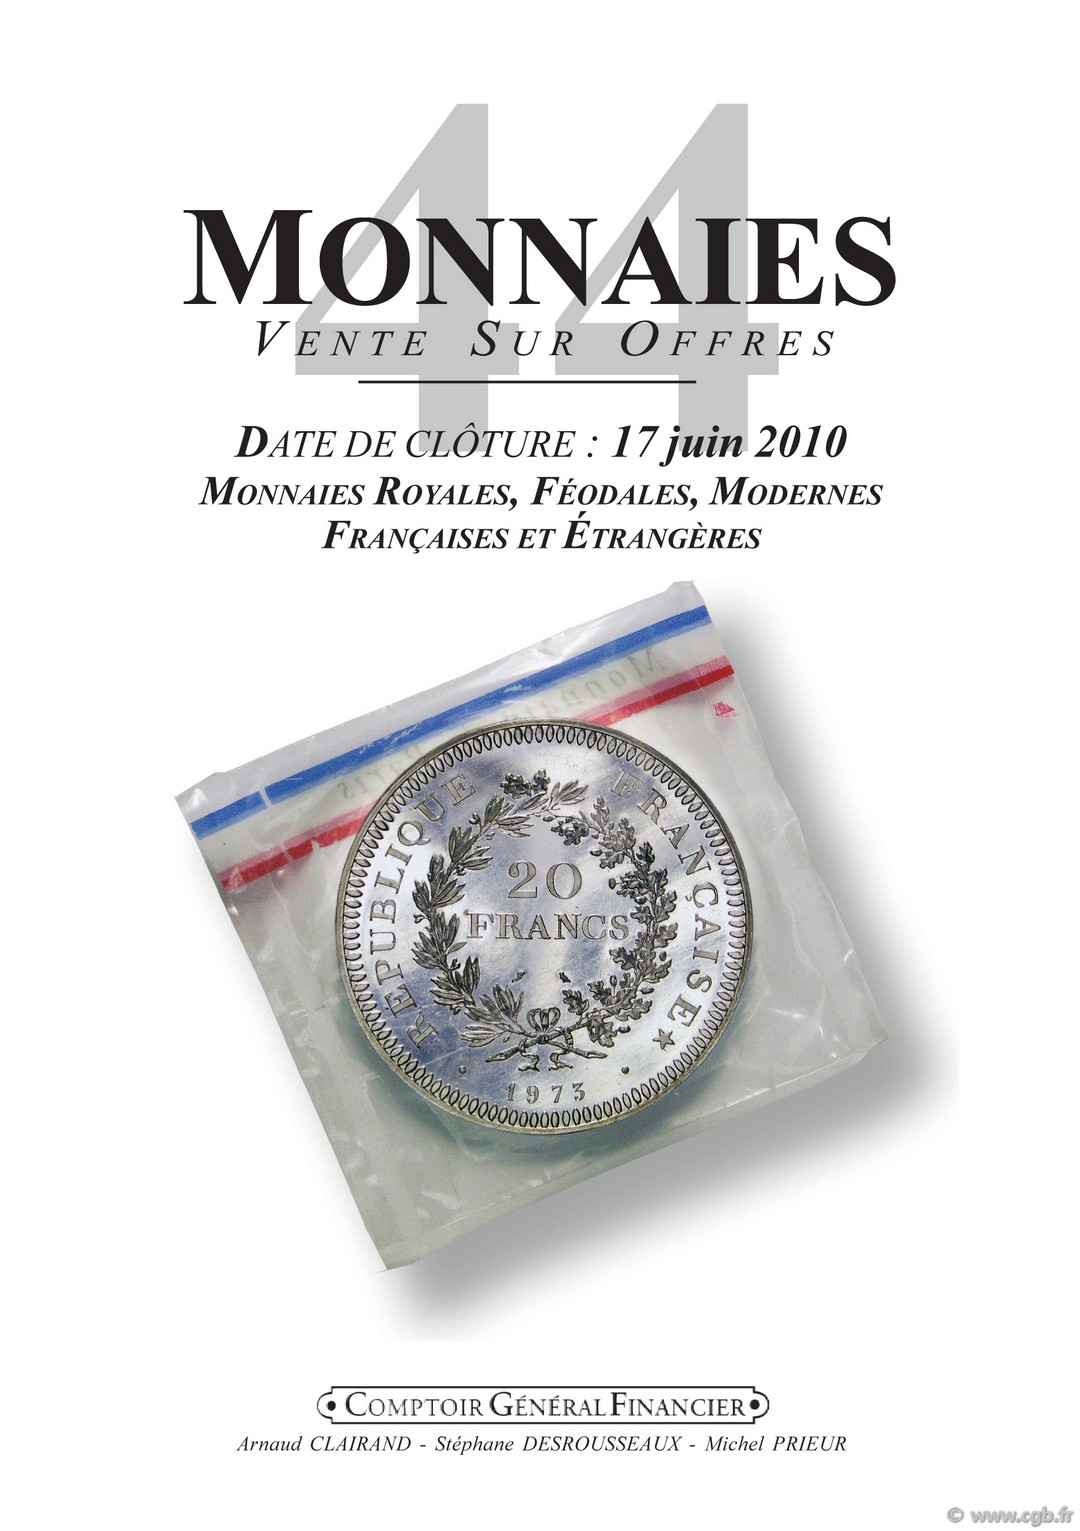 Monnaies 44, monnaies royales et modernes CLAIRAND Arnaud, DESROUSSEAUX Stéphane, PRIEUR Michel 